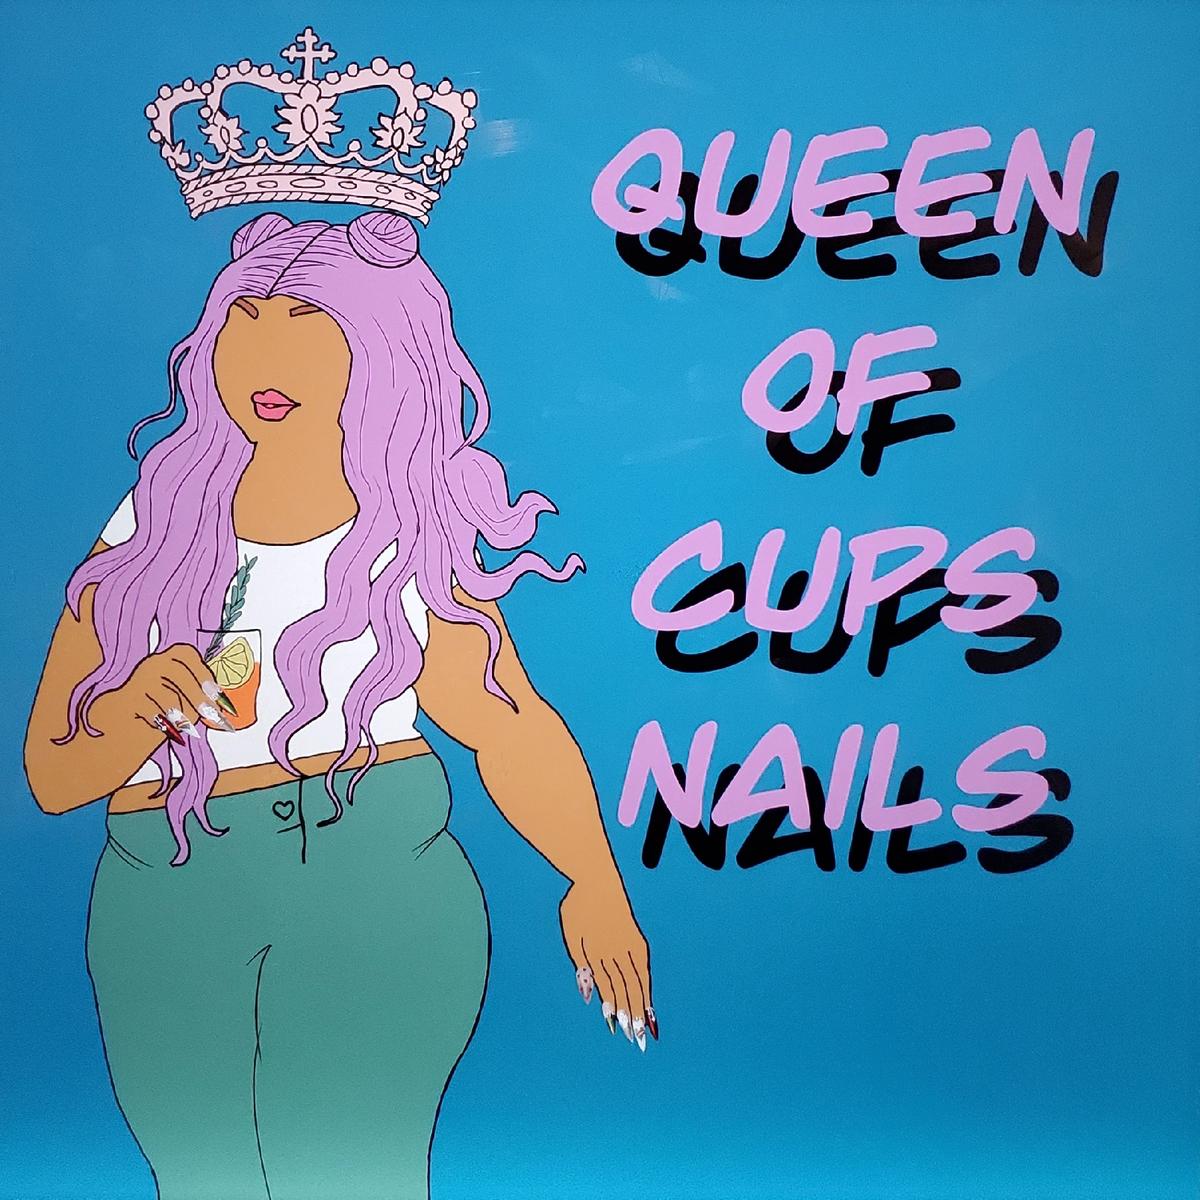 Queen of Cups's images